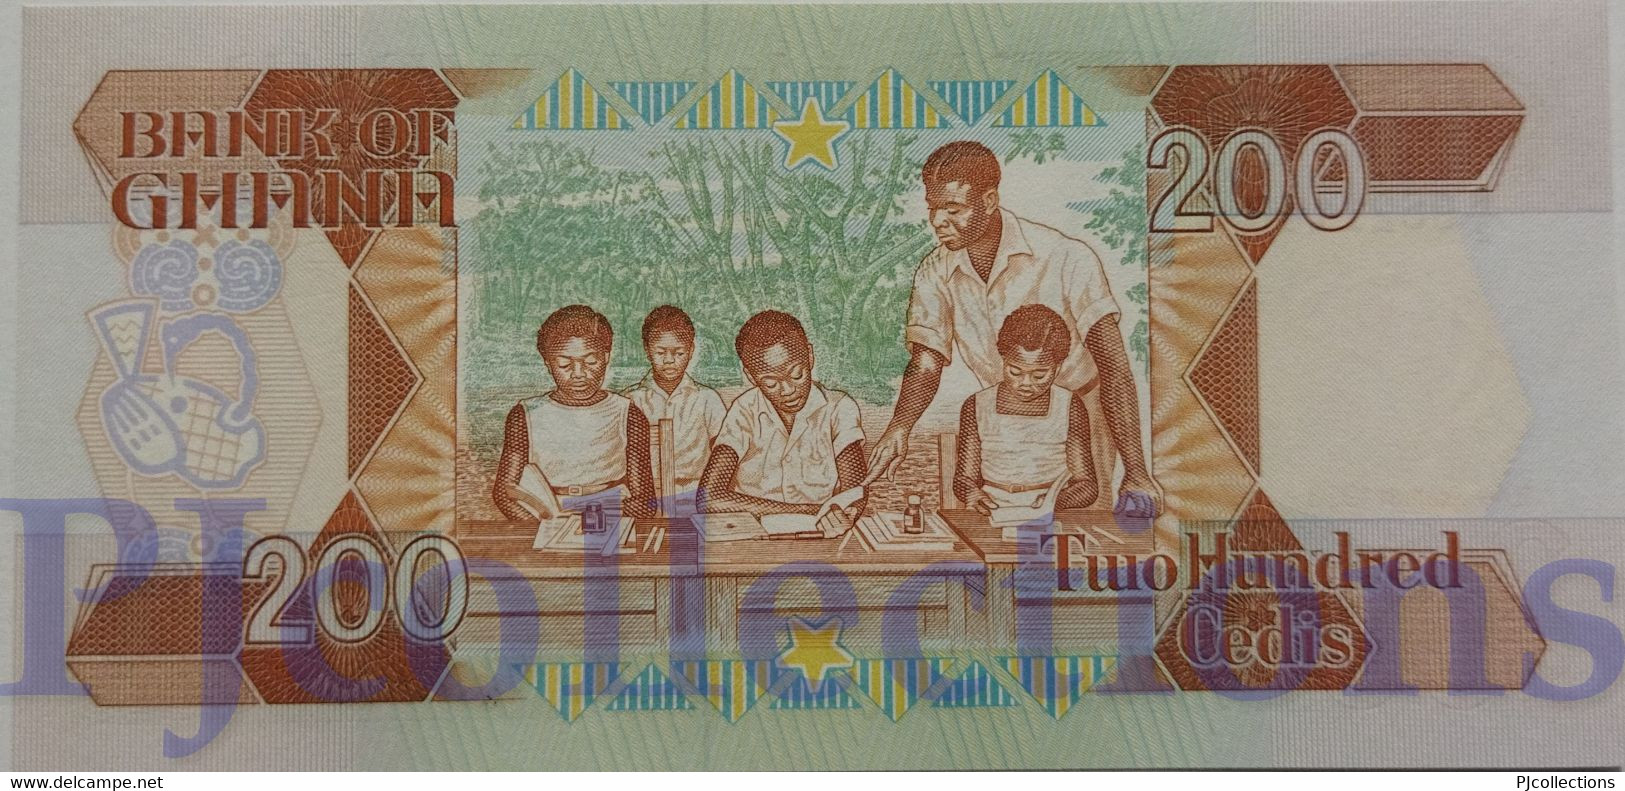 GHANA 200 CEDIS 1990 PICK 27b UNC - Ghana